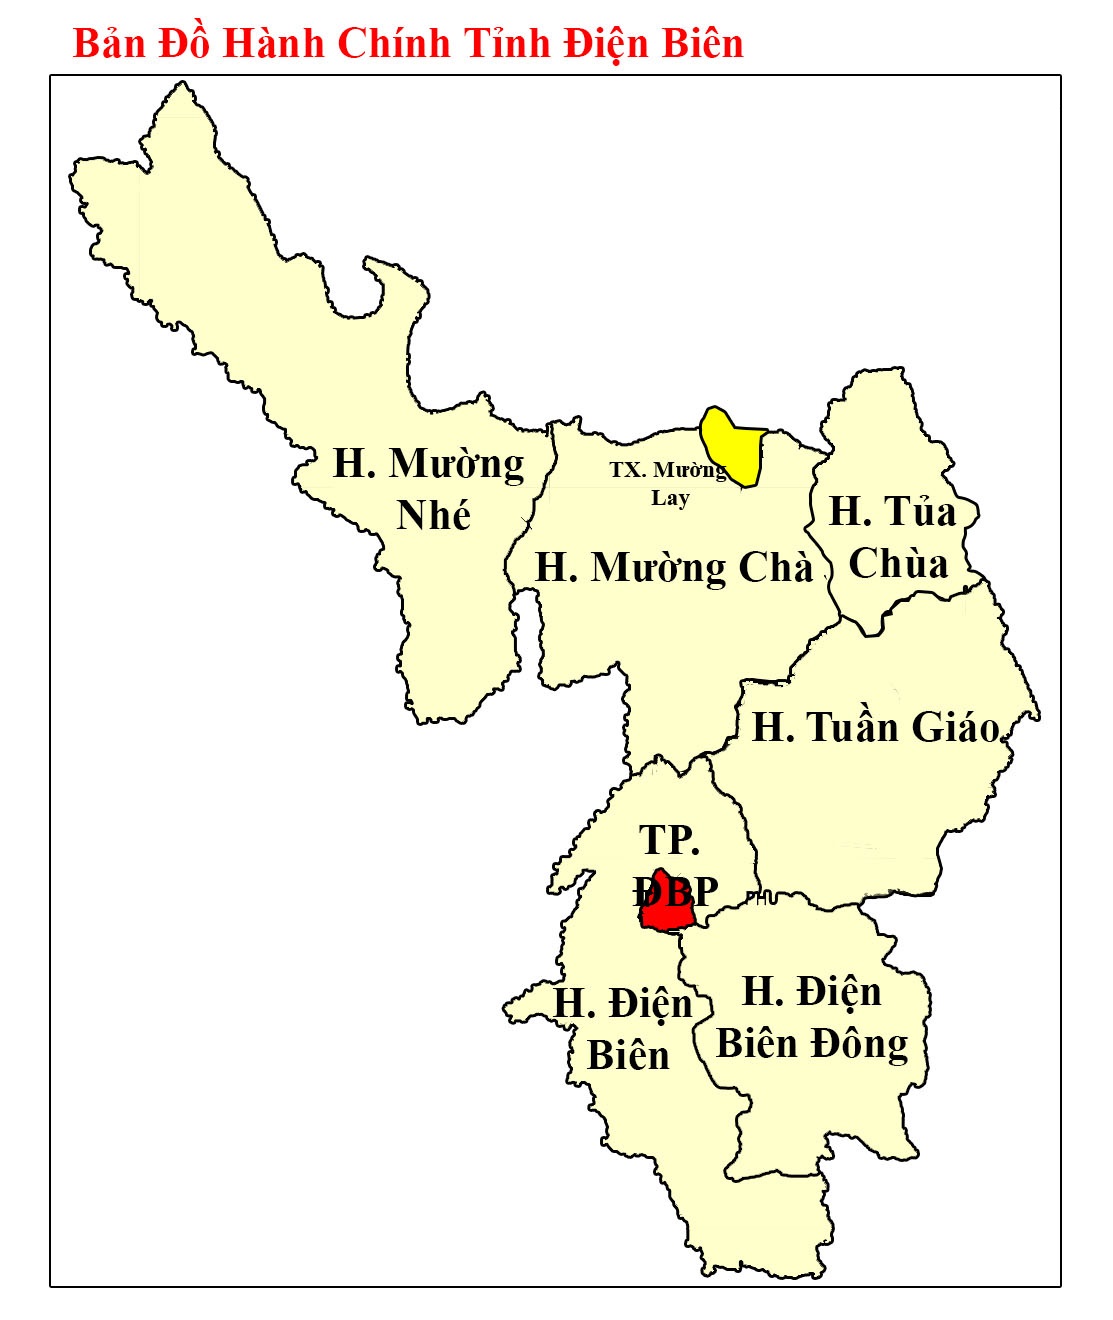 Bản đồ hành chính cấp tỉnh Điện Biên